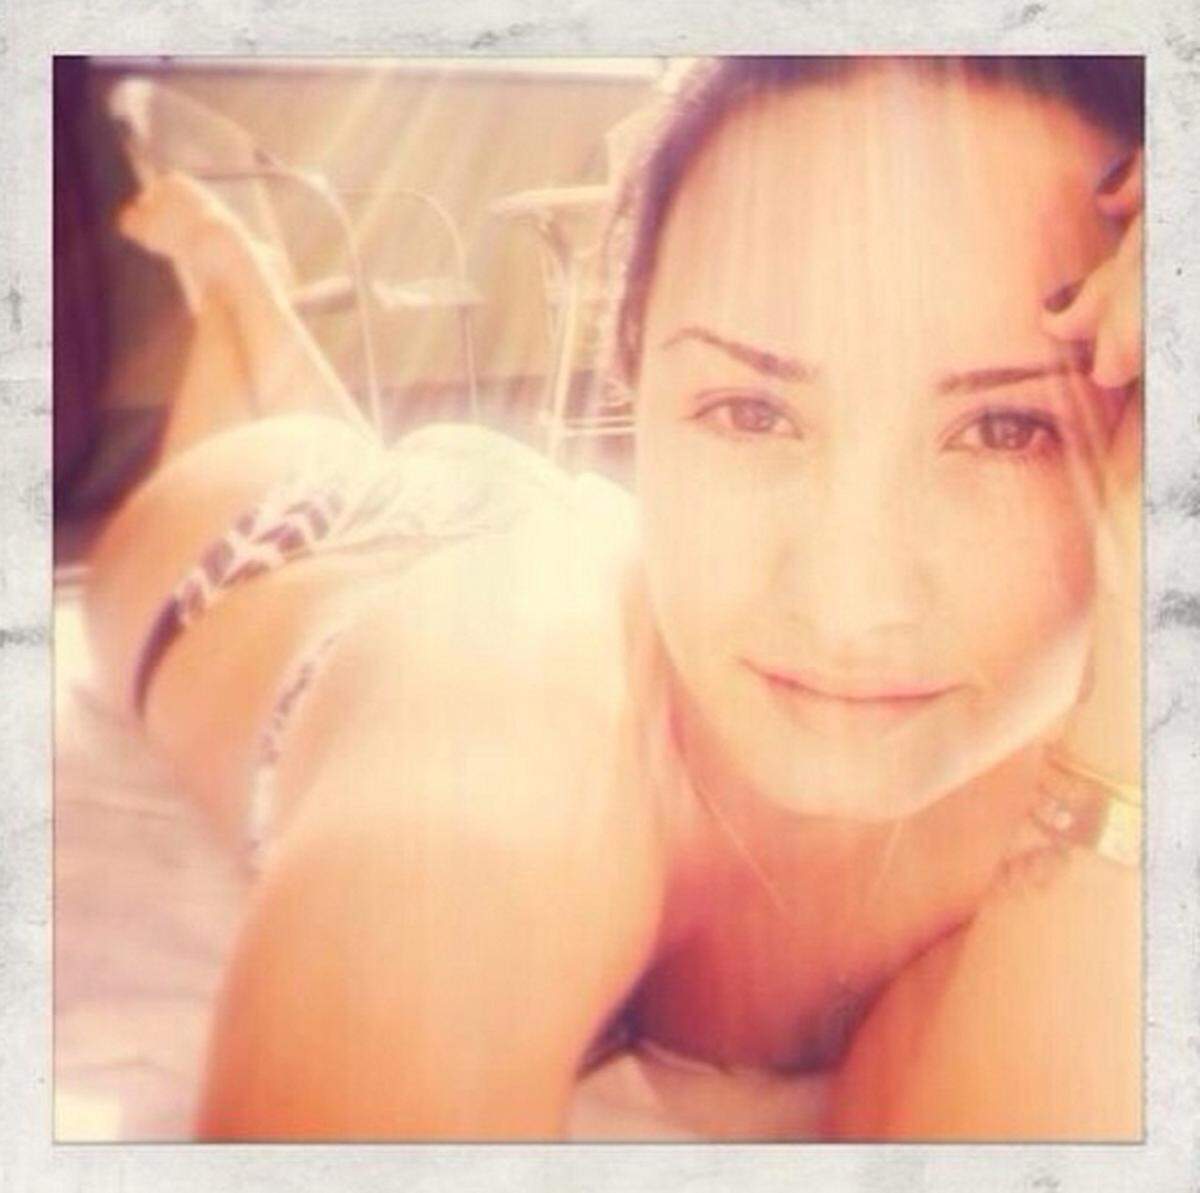 Sängerin Demi Lovato  setzt ihre Kurven besonders geschickt in Szene. Am Bauch liegend sieht man nur ganz leicht im Hintergrund ihren Po.